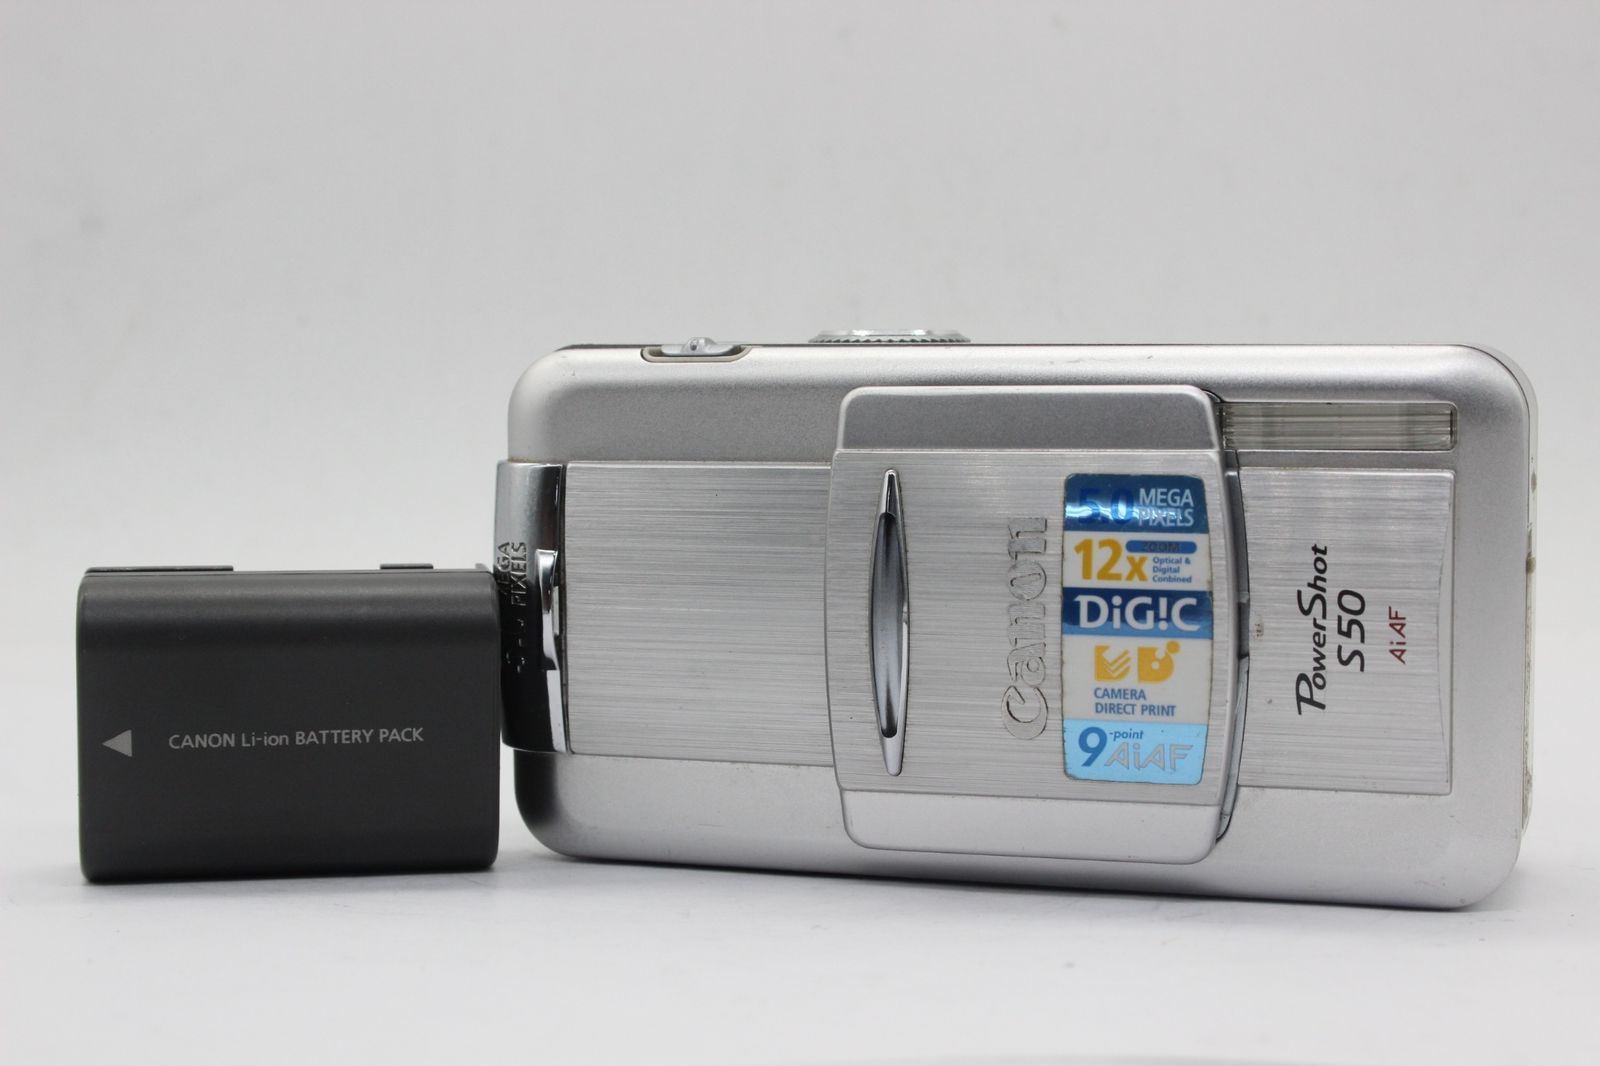 キヤノン 【返品保証】 キャノン Canon PowerShot S50 AiAF 3x バッテリー付き コンパクトデジタルカメラ s9065